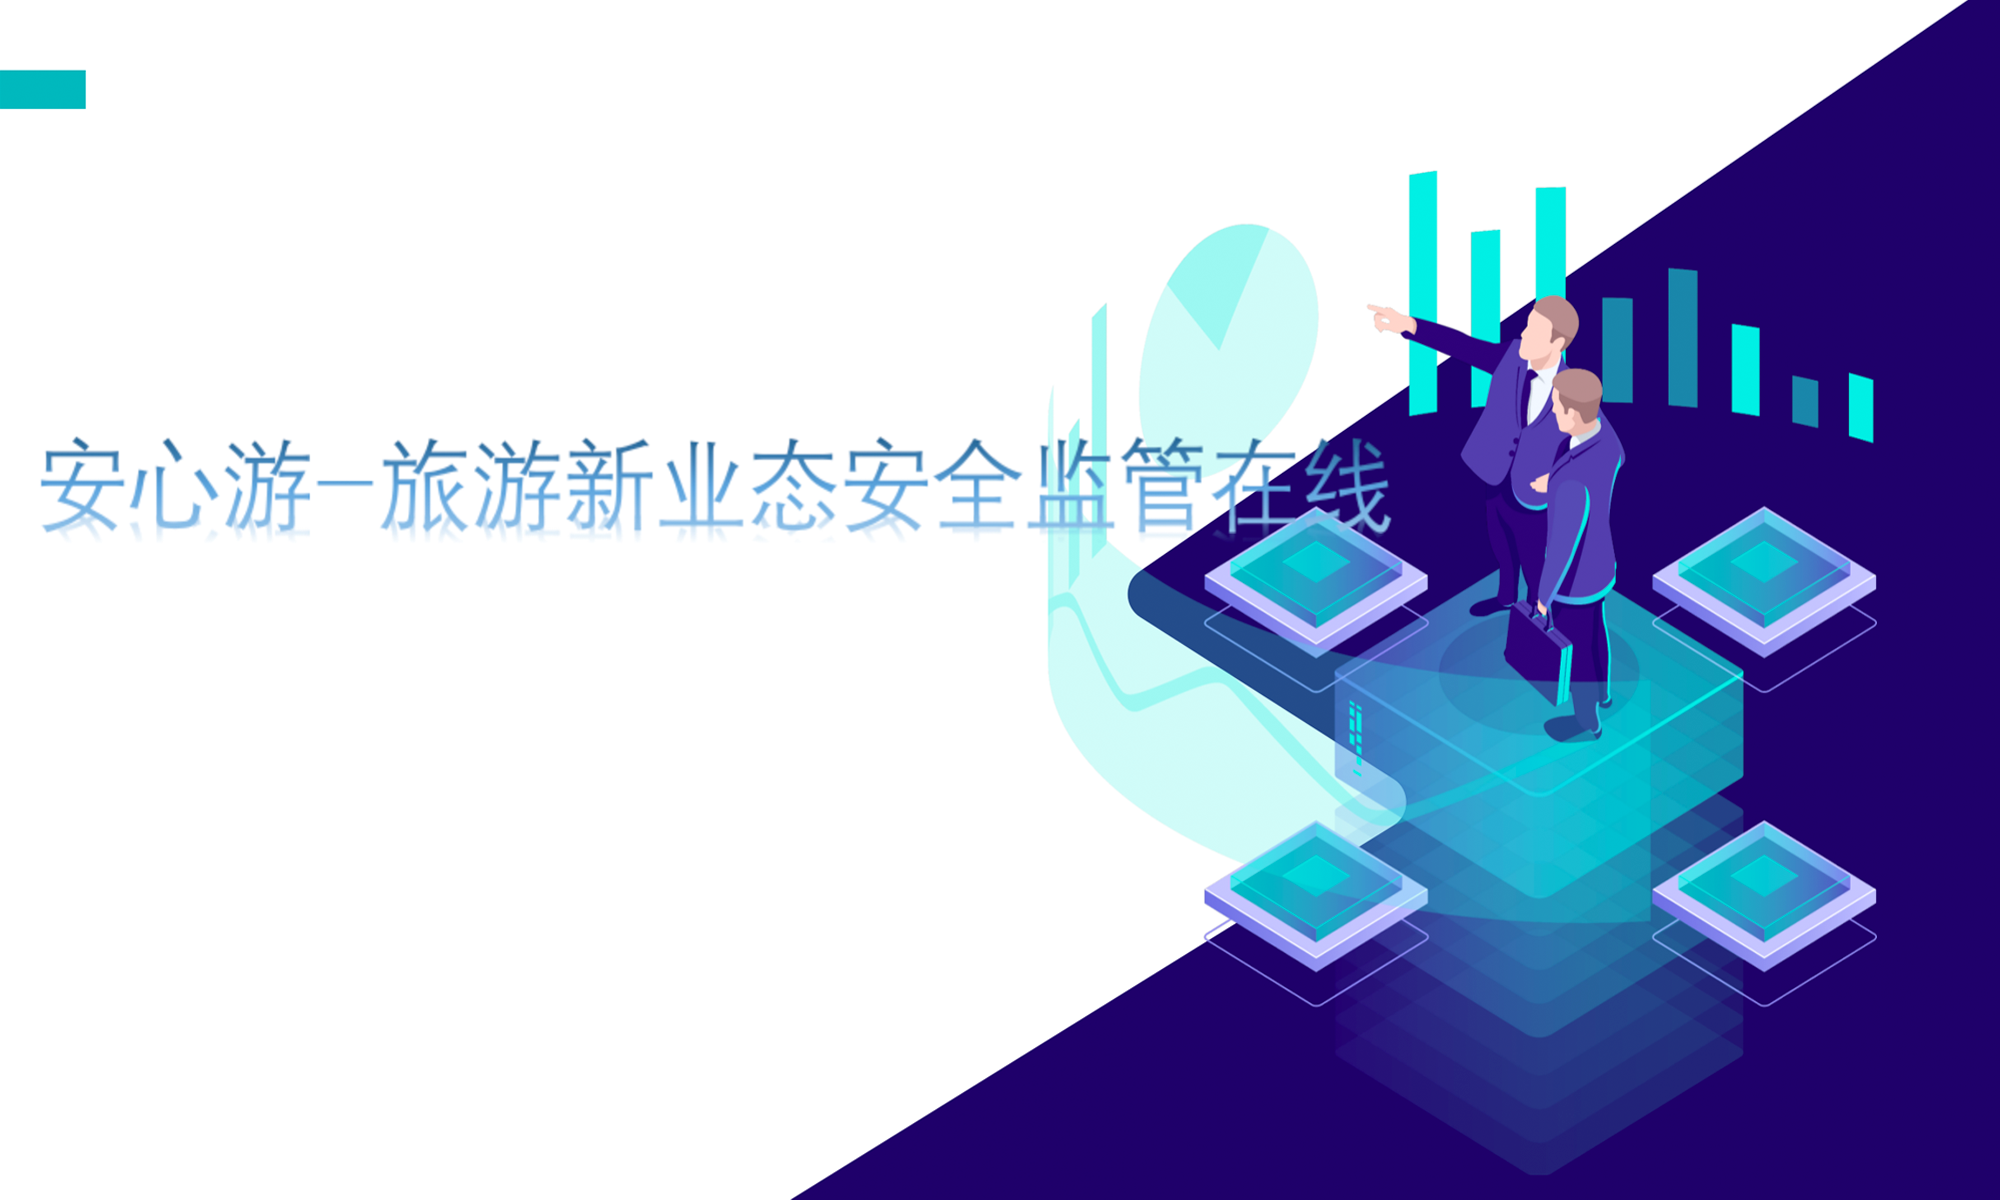 上海锐尔沃斯网络信息技术有限公司 安心游-旅游新业态安全监管在线